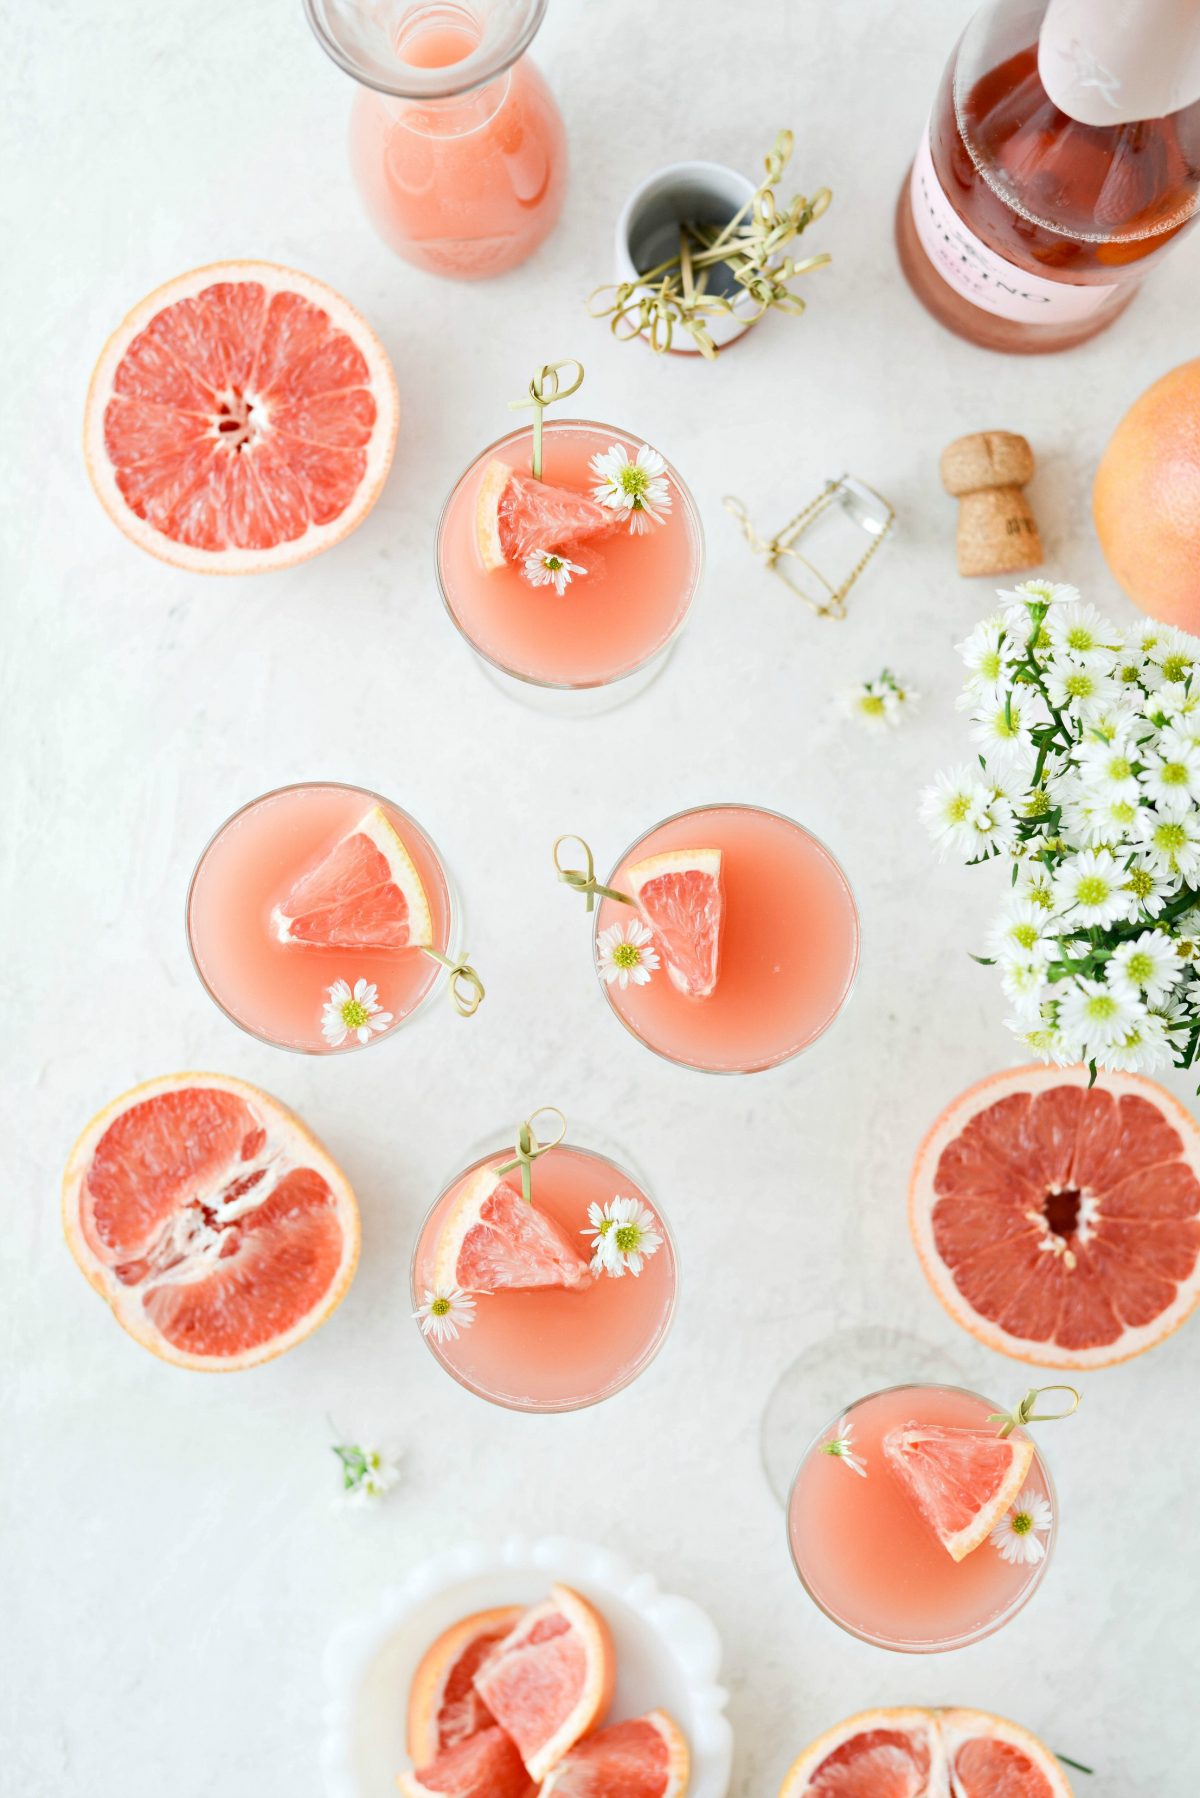  Grapefruit Rosus Mimosas l SimplyScratch.com # adult # băutură # grapefruit # trandafir # mimosa # Paște #brunch # Ziua Mamei